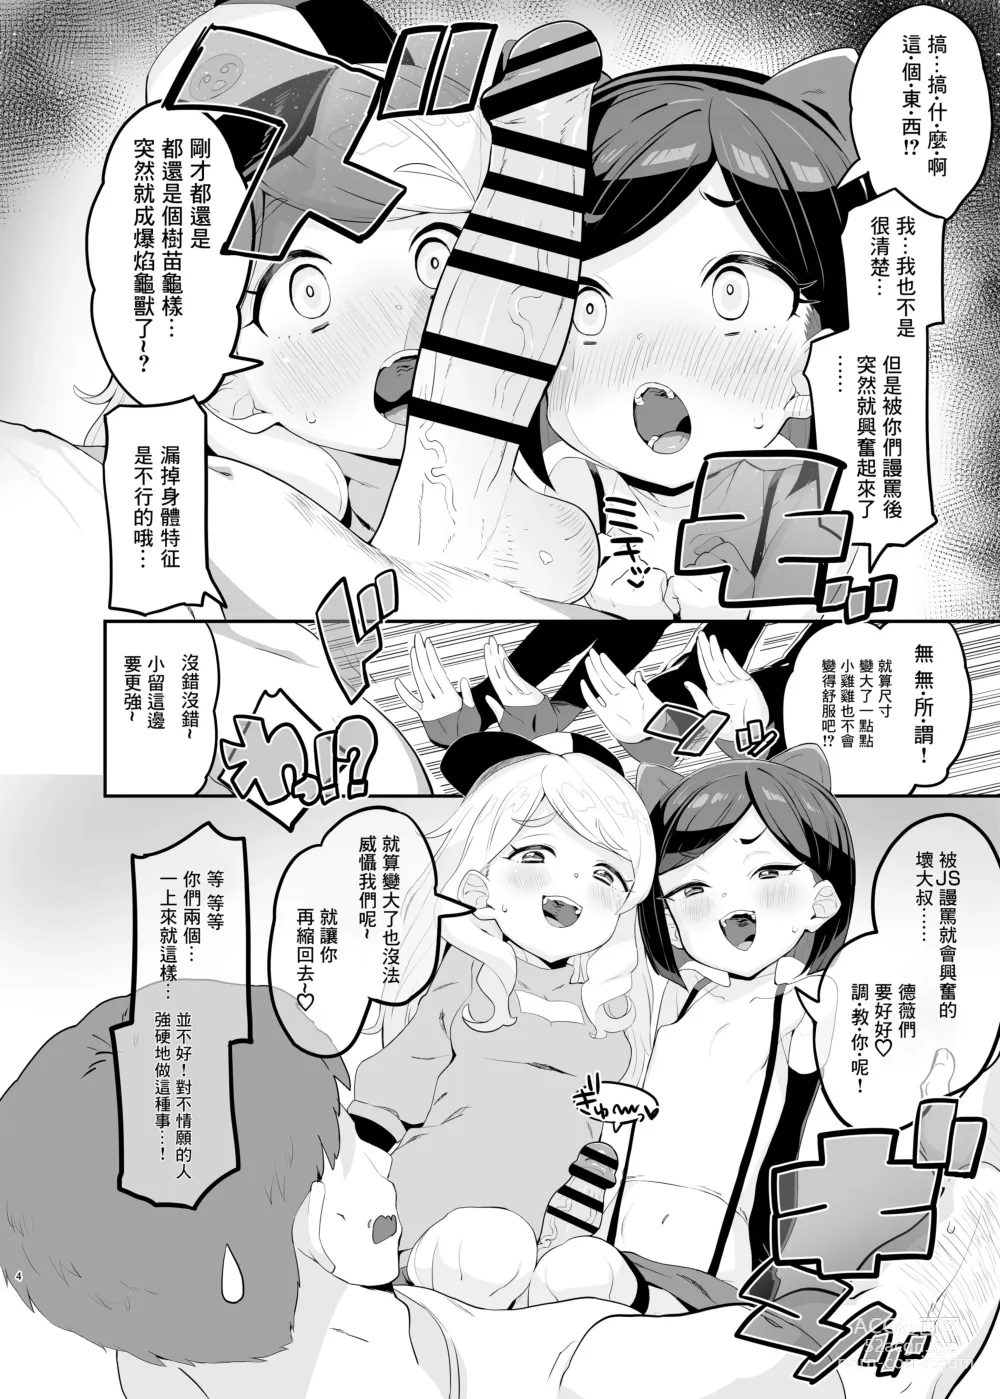 Page 4 of doujinshi Retsujou-ban Mesugaki Trix Lou VS Devi VS Sao-yaku Ojisan